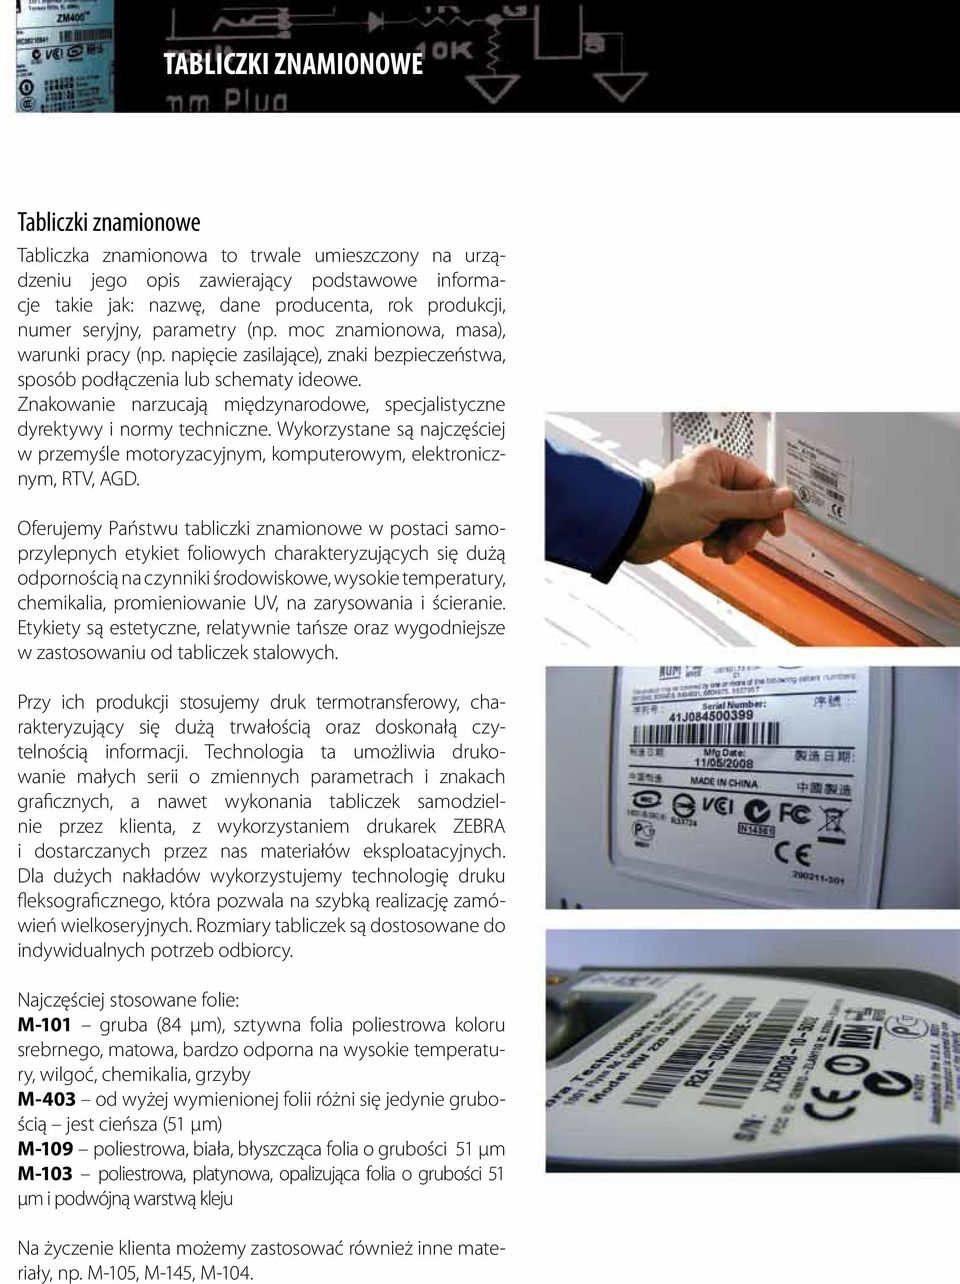 Znakowanie narzucają międzynarodowe, specjalistyczne dyrektywy i normy techniczne. Wykorzystane są najczęściej w przemyśle motoryzacyjnym, komputerowym, elektronicznym, RTV, AGD.